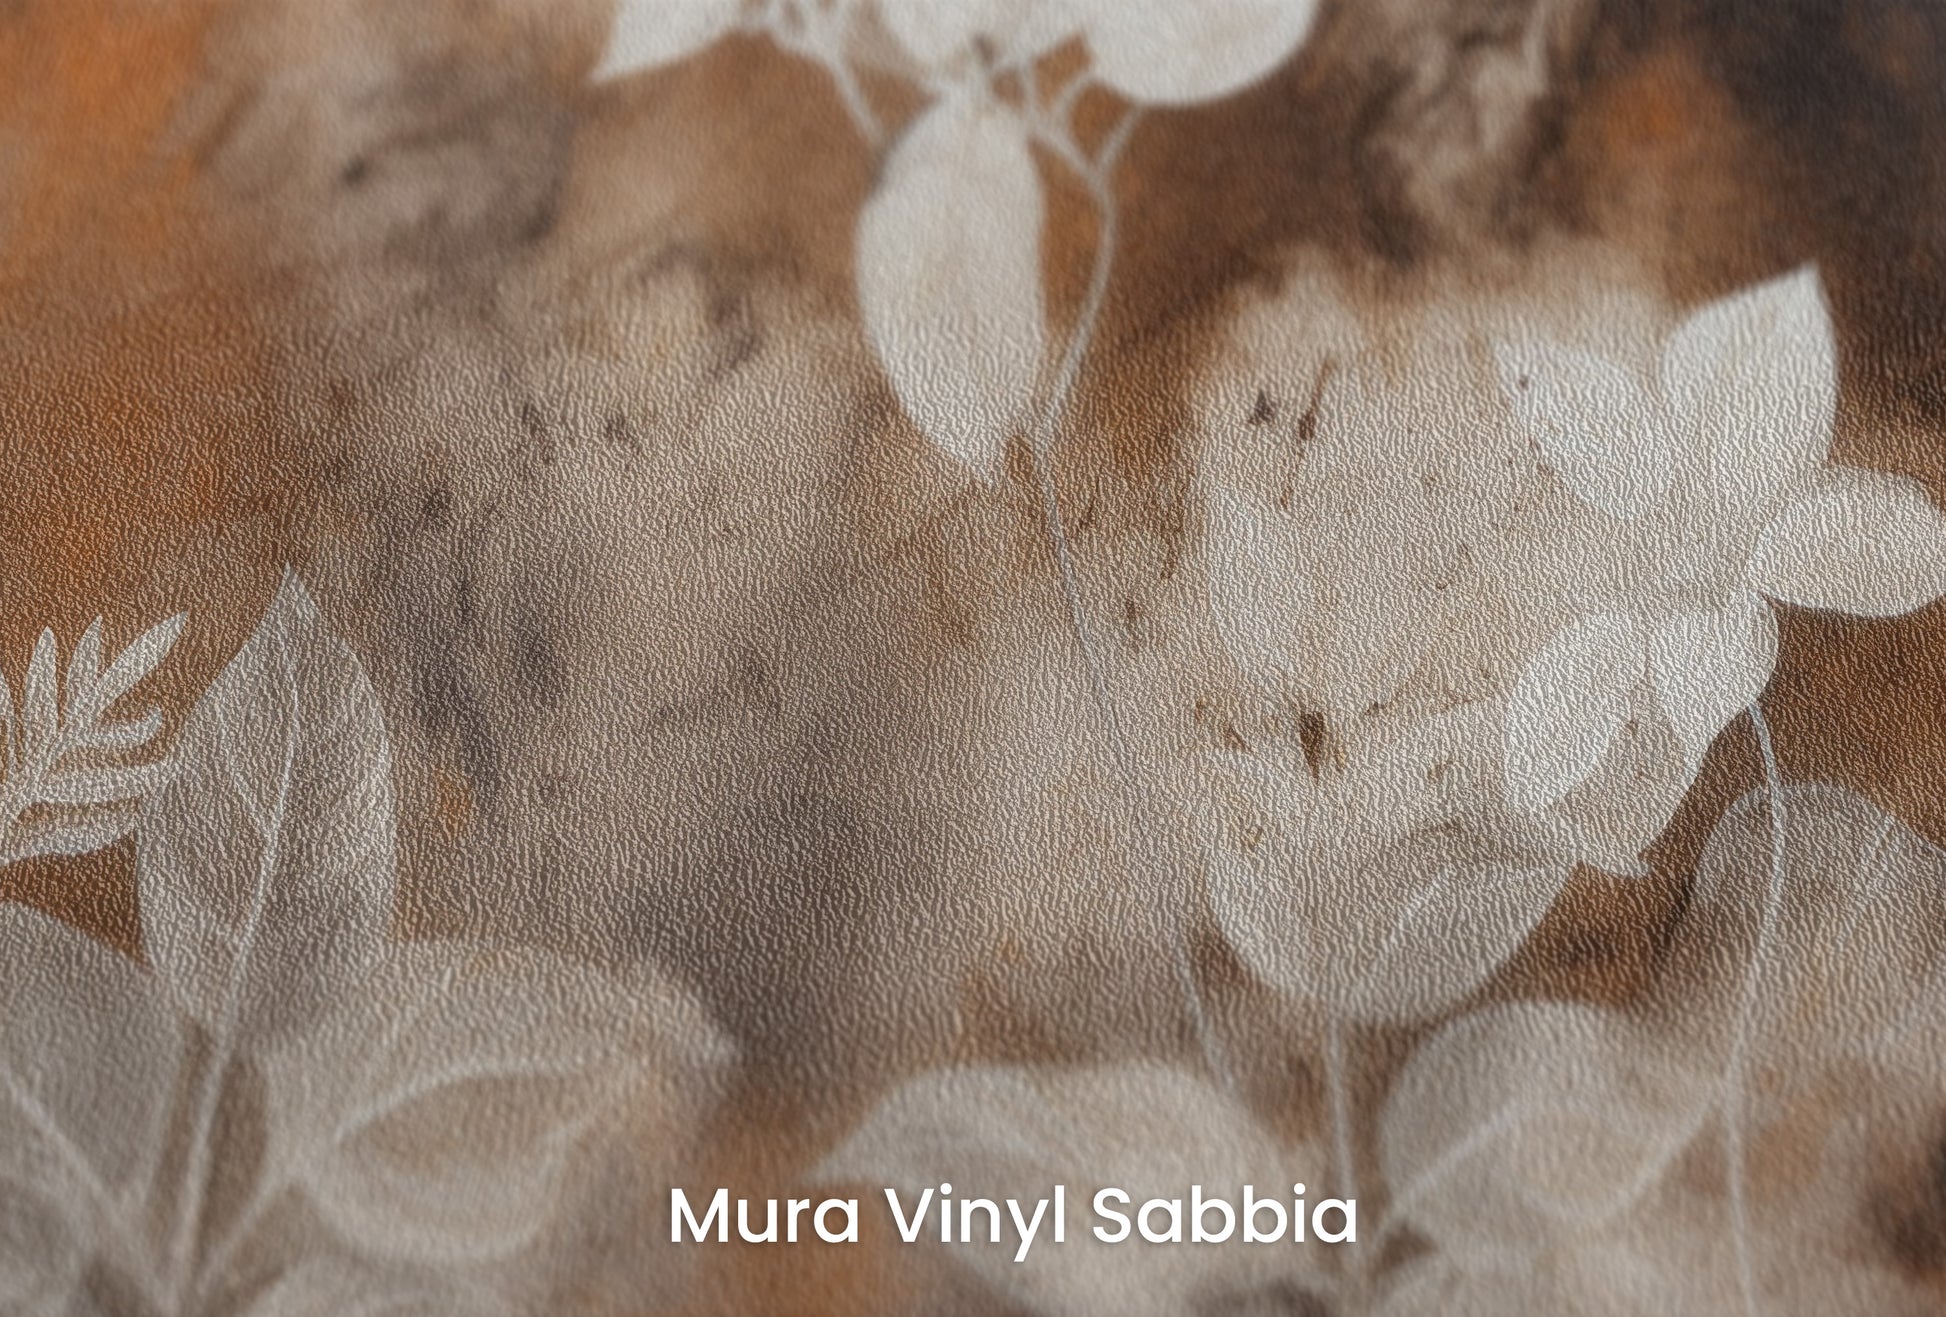 Zbliżenie na artystyczną fototapetę o nazwie Mystic Garden Silhouettes na podłożu Mura Vinyl Sabbia struktura grubego ziarna piasku.